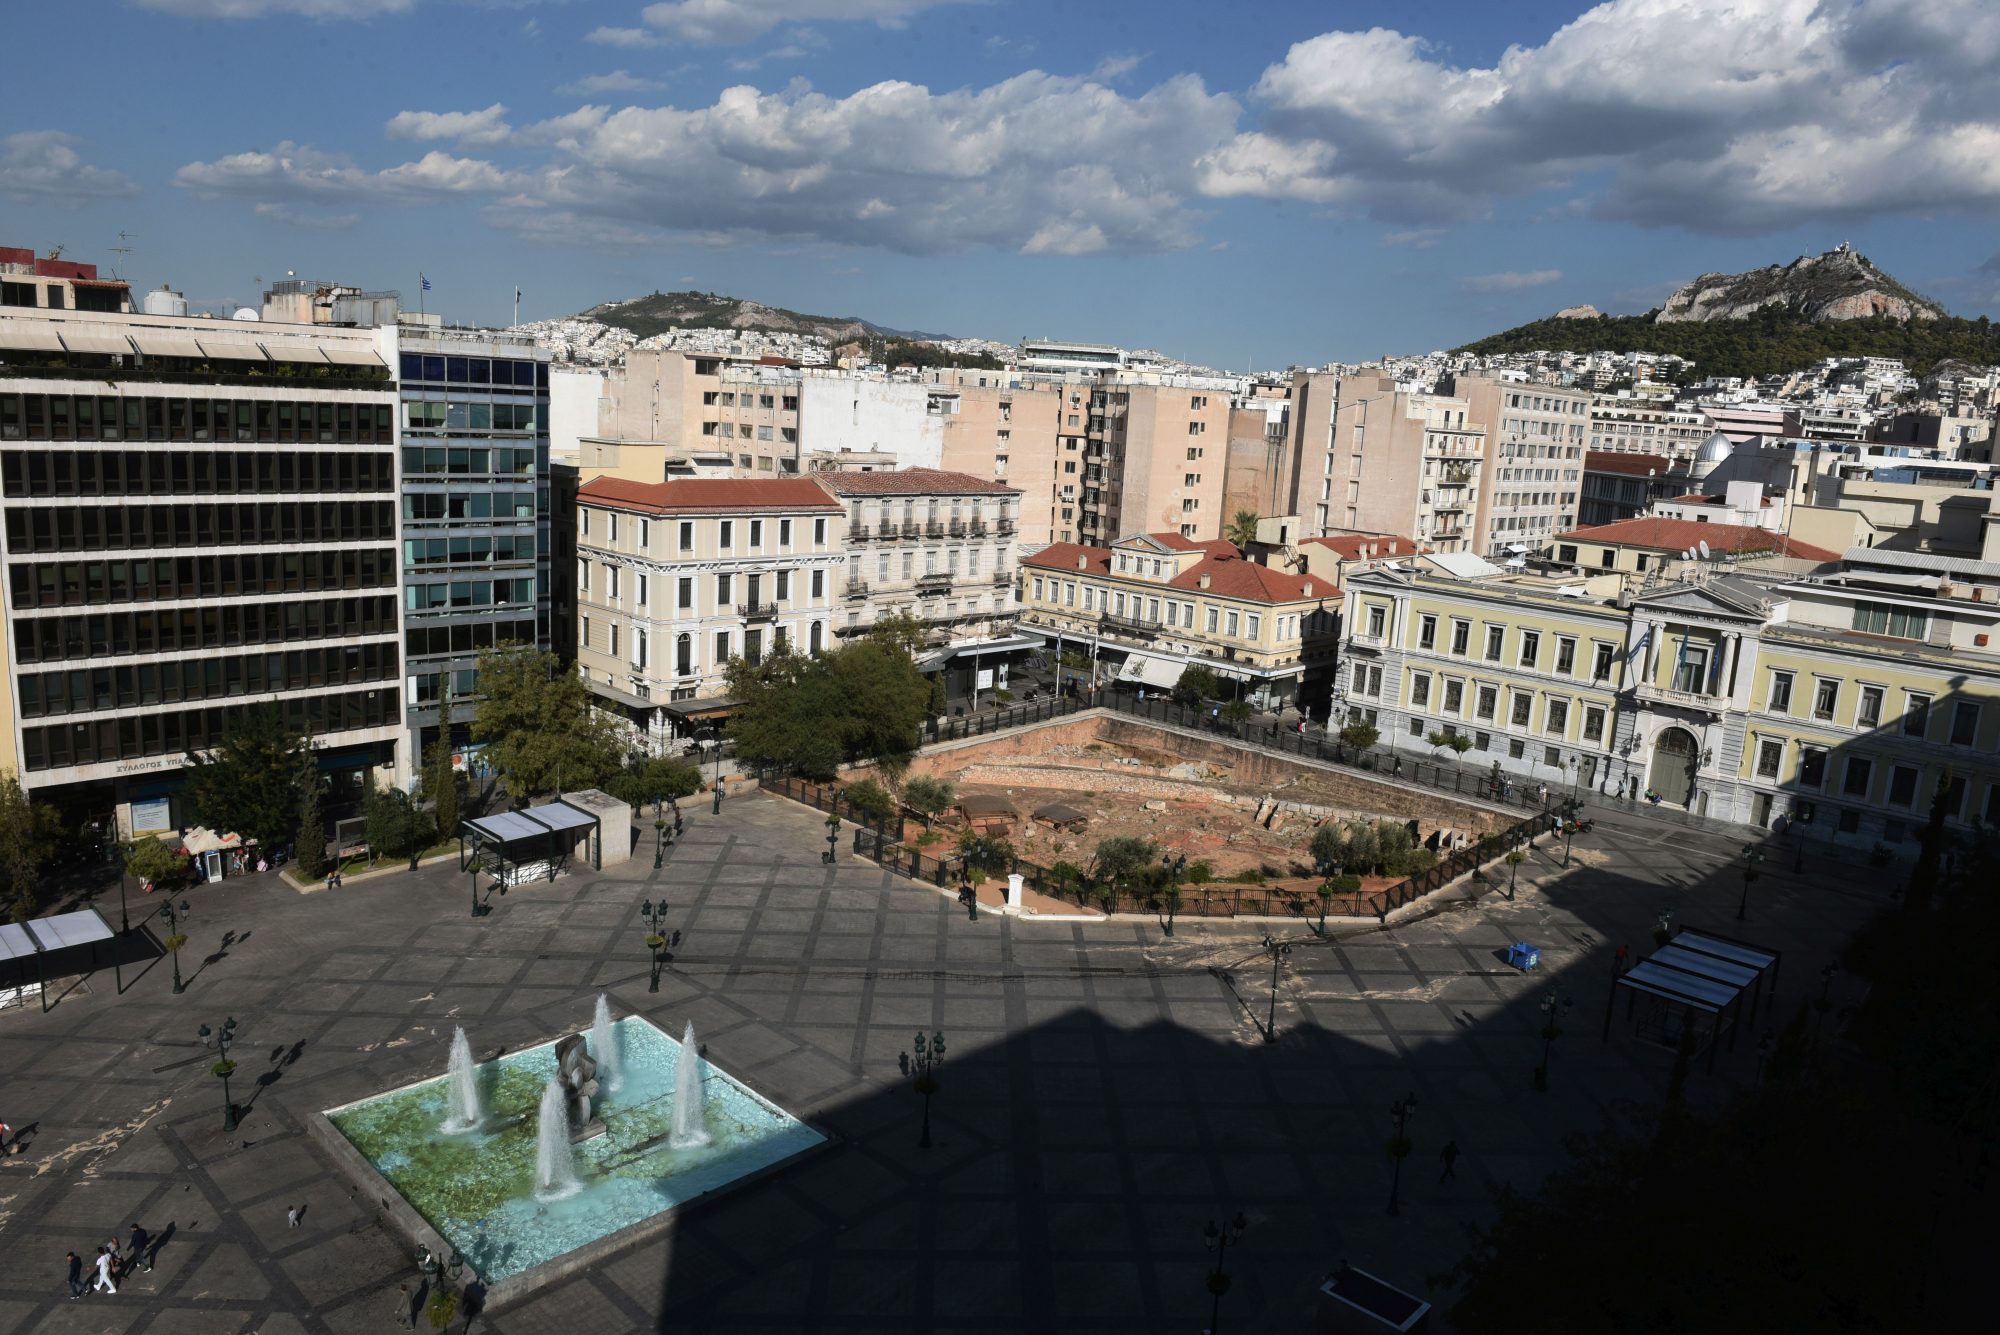 Δήμος Αθηναίων: Πότε θα γίνει σοβαρή συζήτηση για τα μεγάλα προβλήματα;